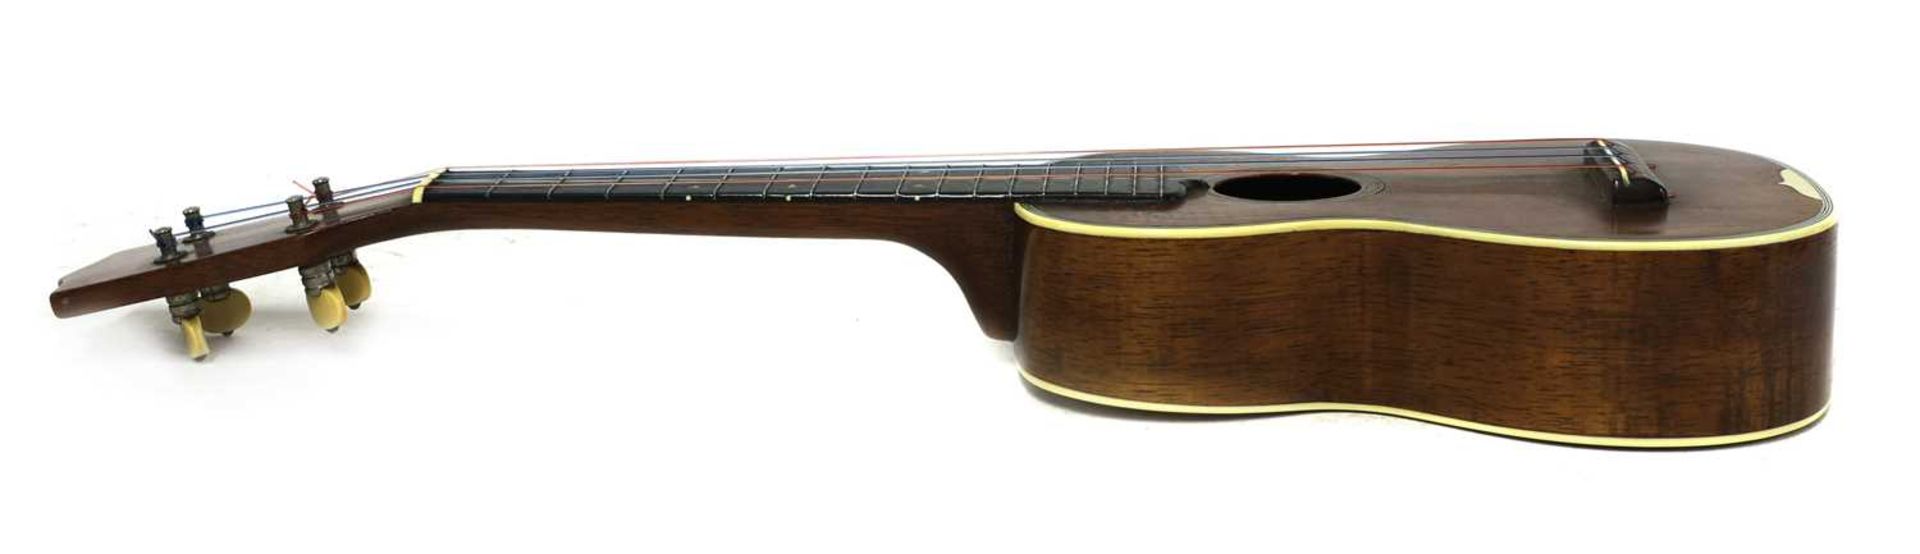 A Martin & Co. Style 3 ukulele, - Bild 2 aus 8